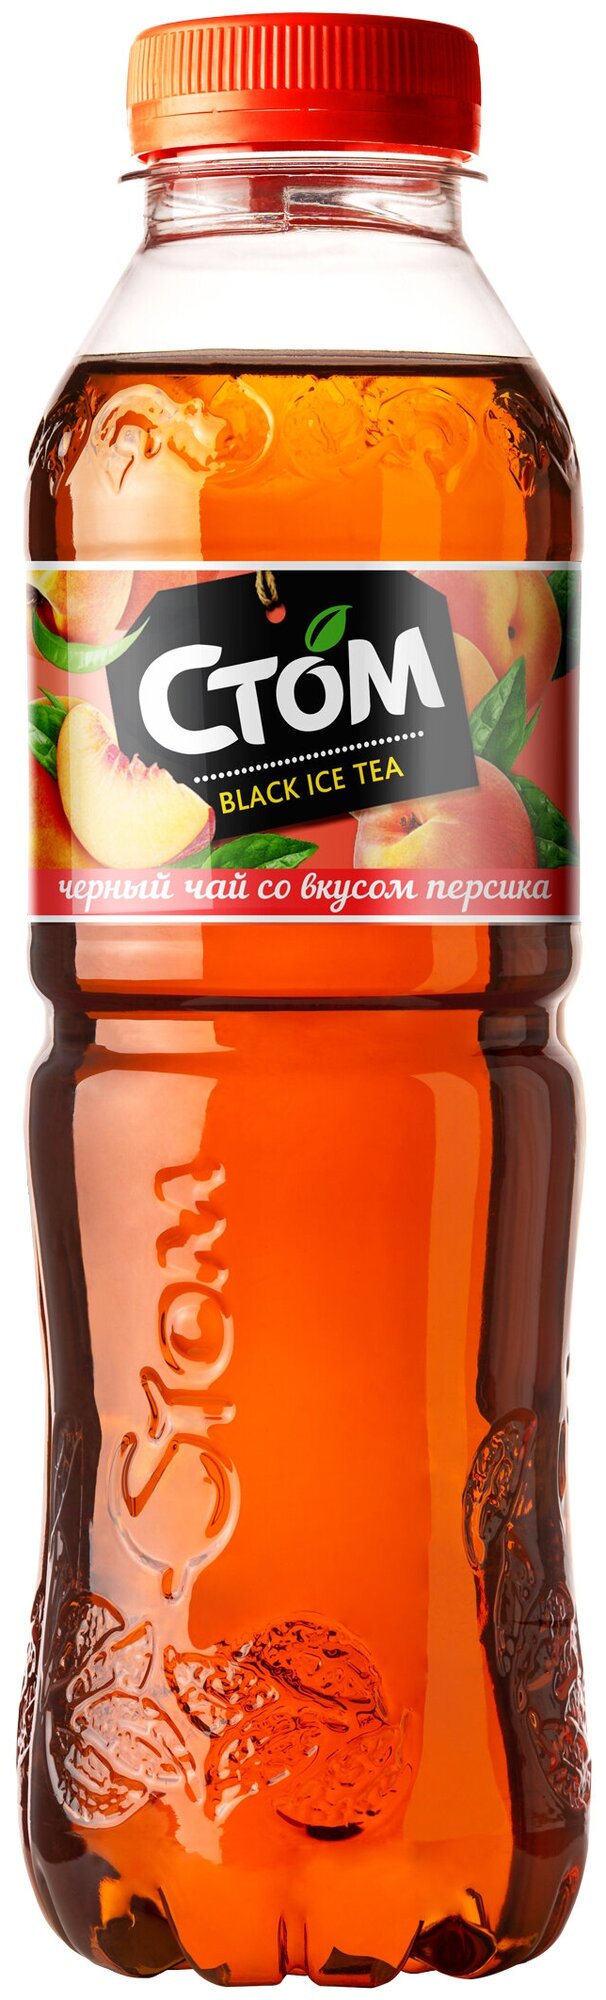 Холодный чай черный со вкусом Персика стом (12 шт) 0,5 л